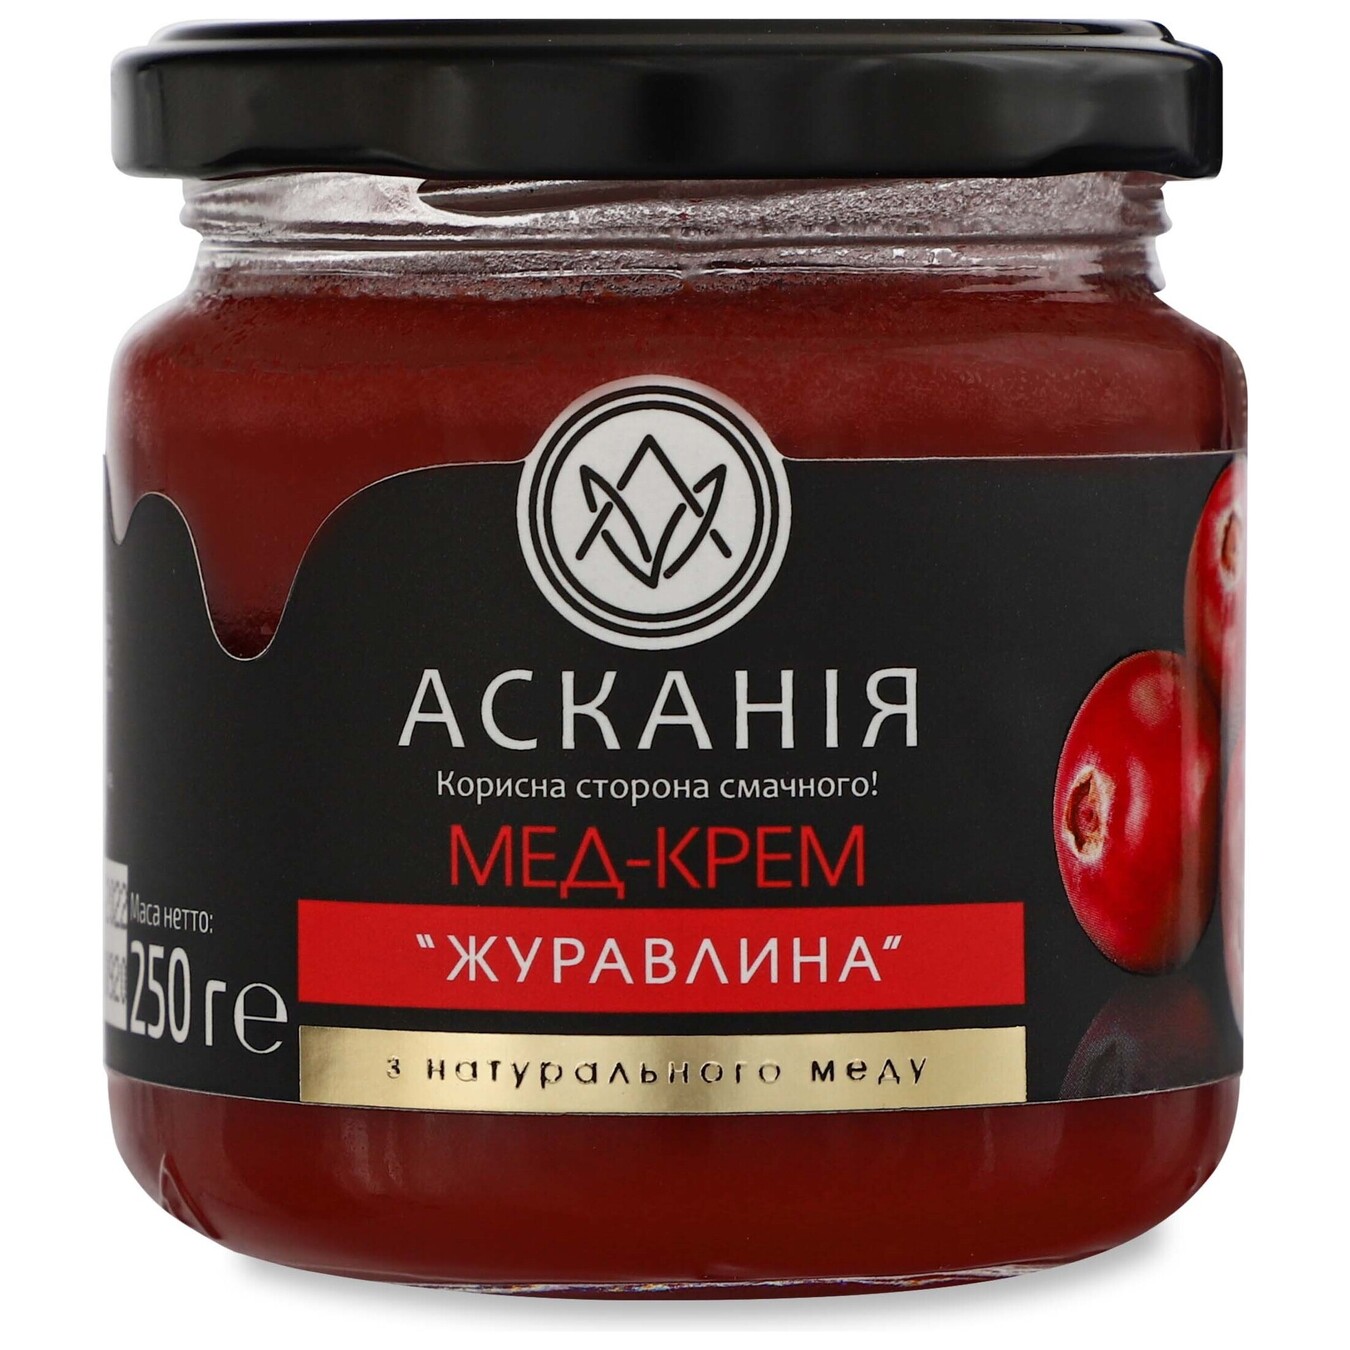 Askania cranberry honey cream 250 g